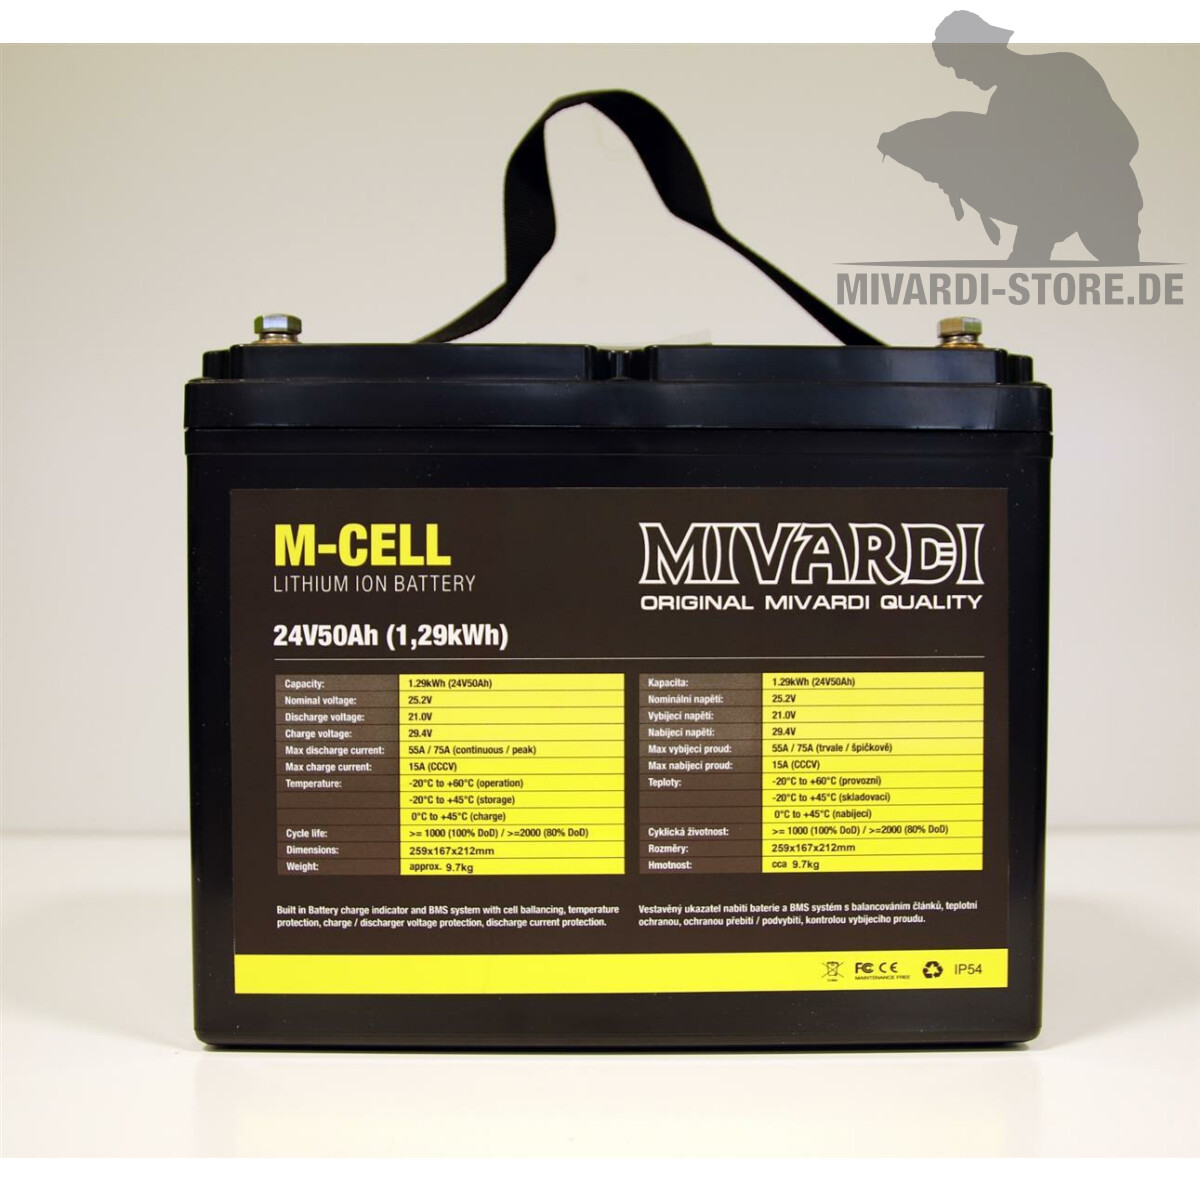 M-CELL Lithium-Batterie 24V / 50AH - Mivardi Store - das ganze Sortim